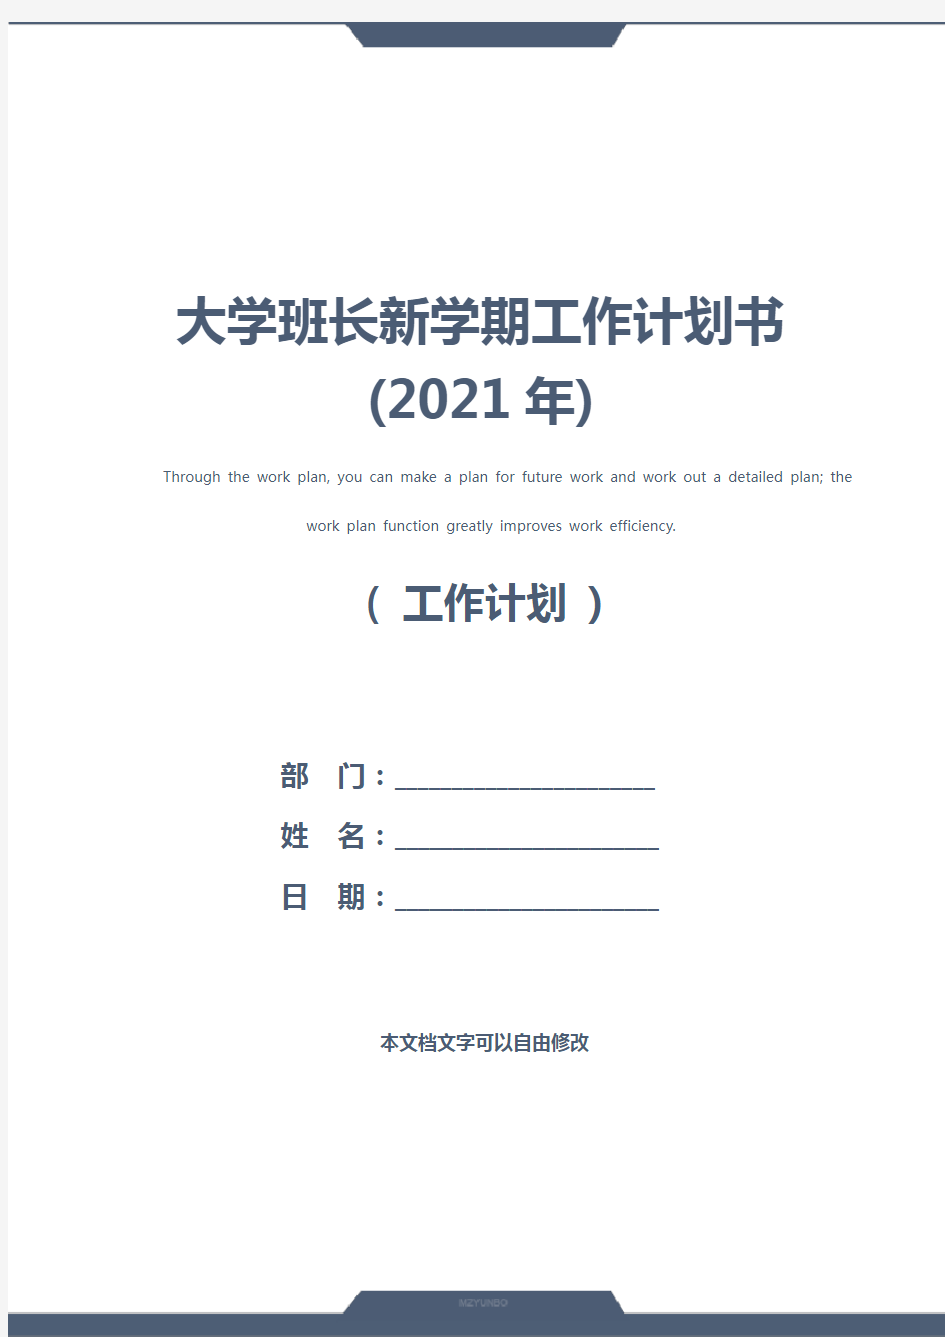 大学班长新学期工作计划书(2021年)